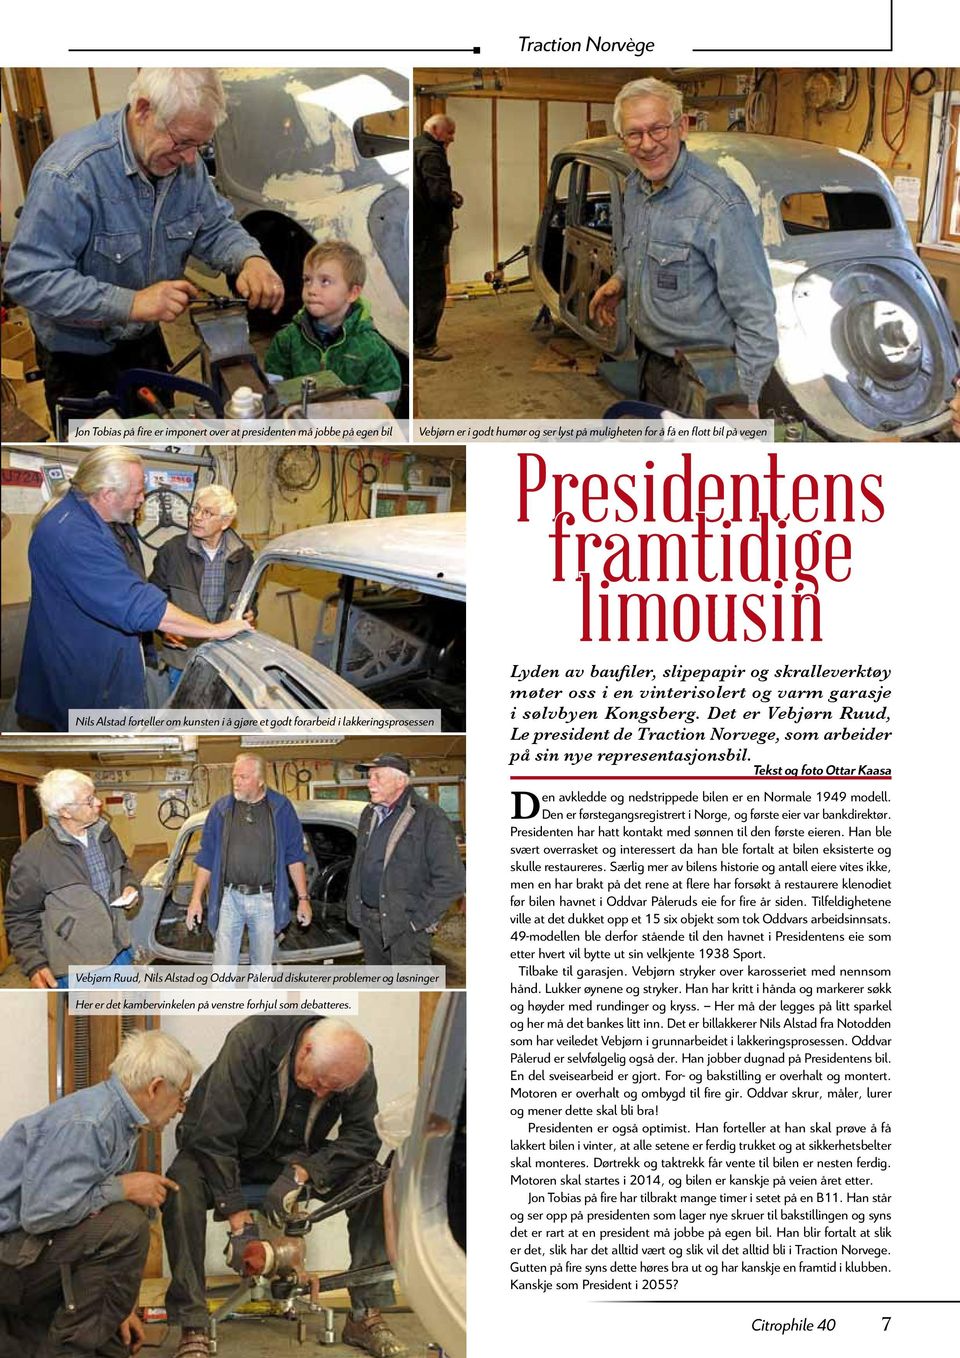 Det er Vebjørn Ruud, Le president de Traction Norvege, som arbeider på sin nye representasjonsbil.